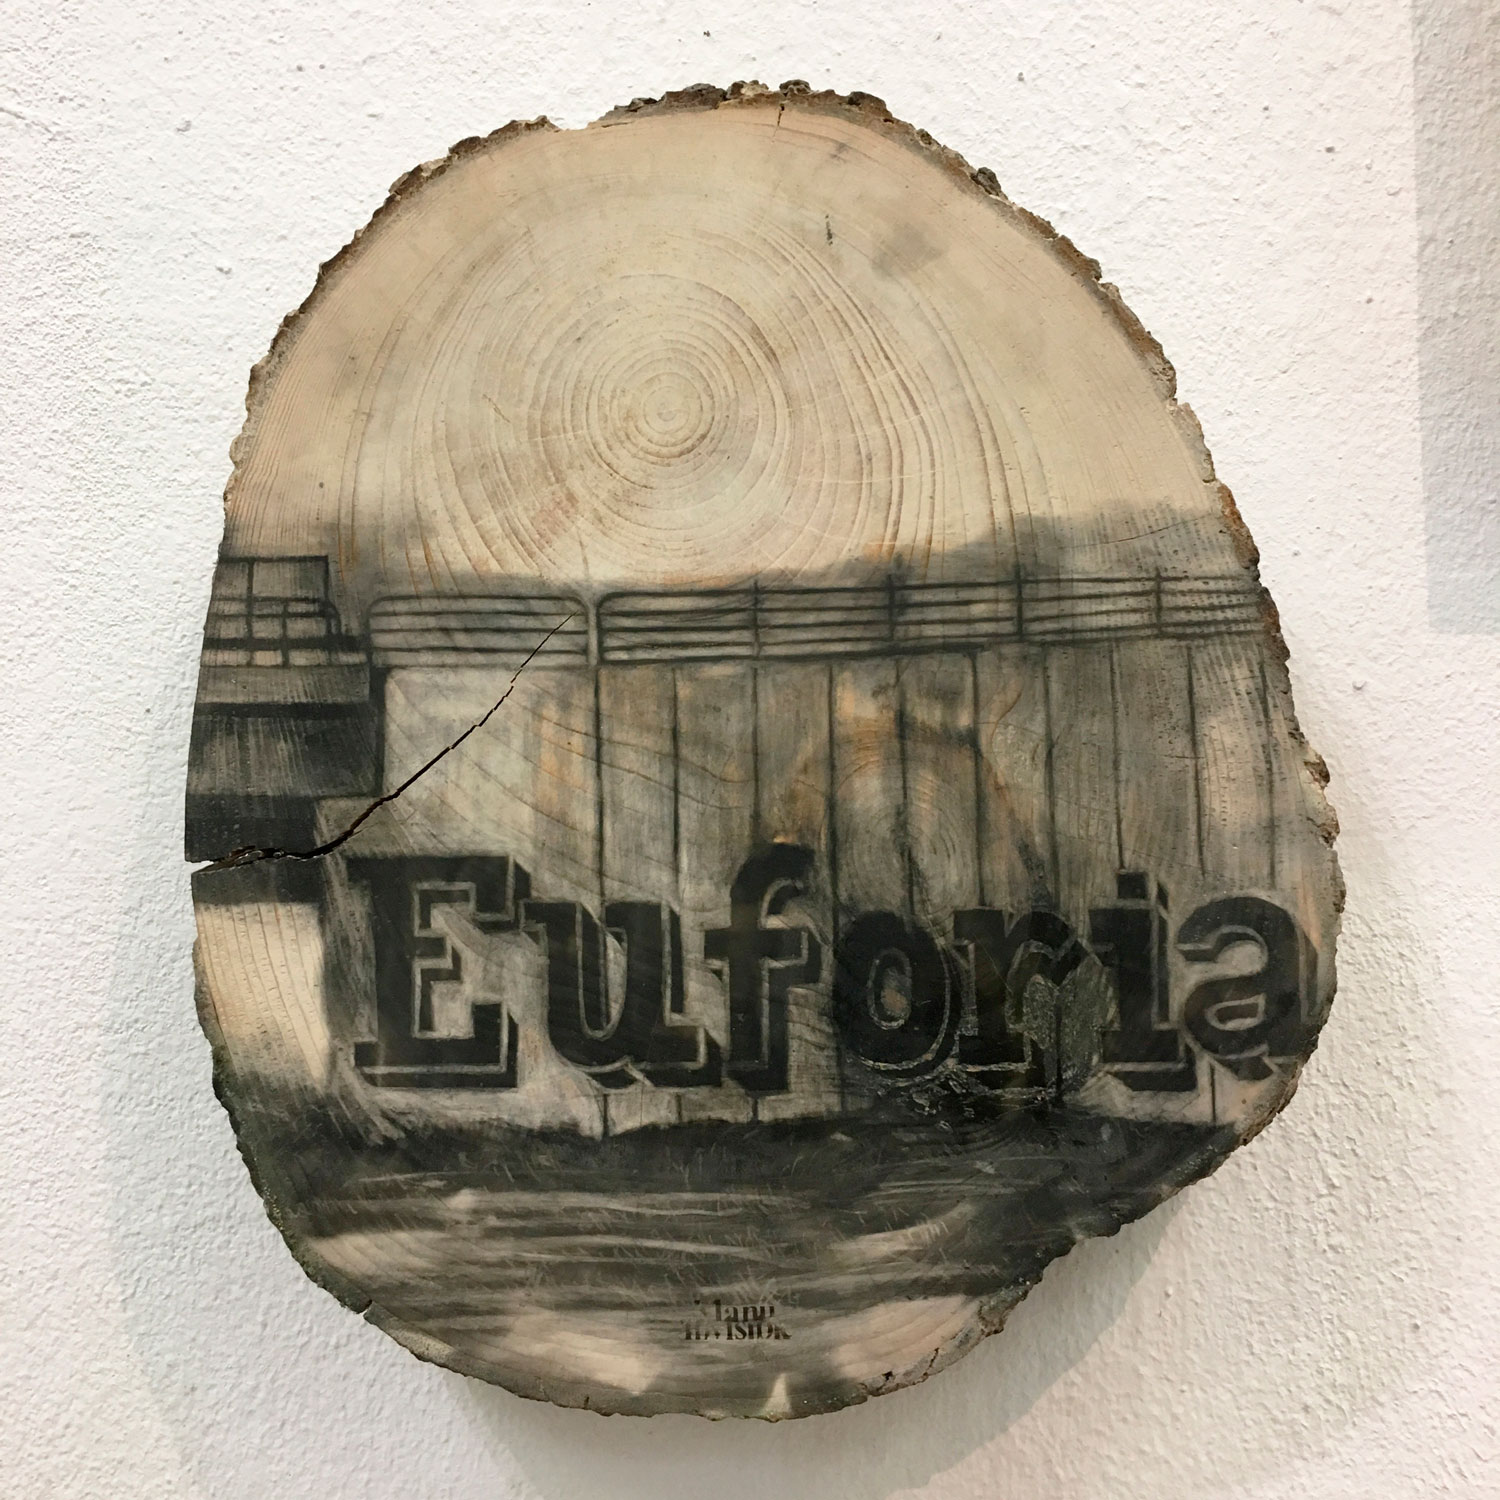 “Euforia” Fumée sur bois 95 cm (circonférence) x 7 cm 2017